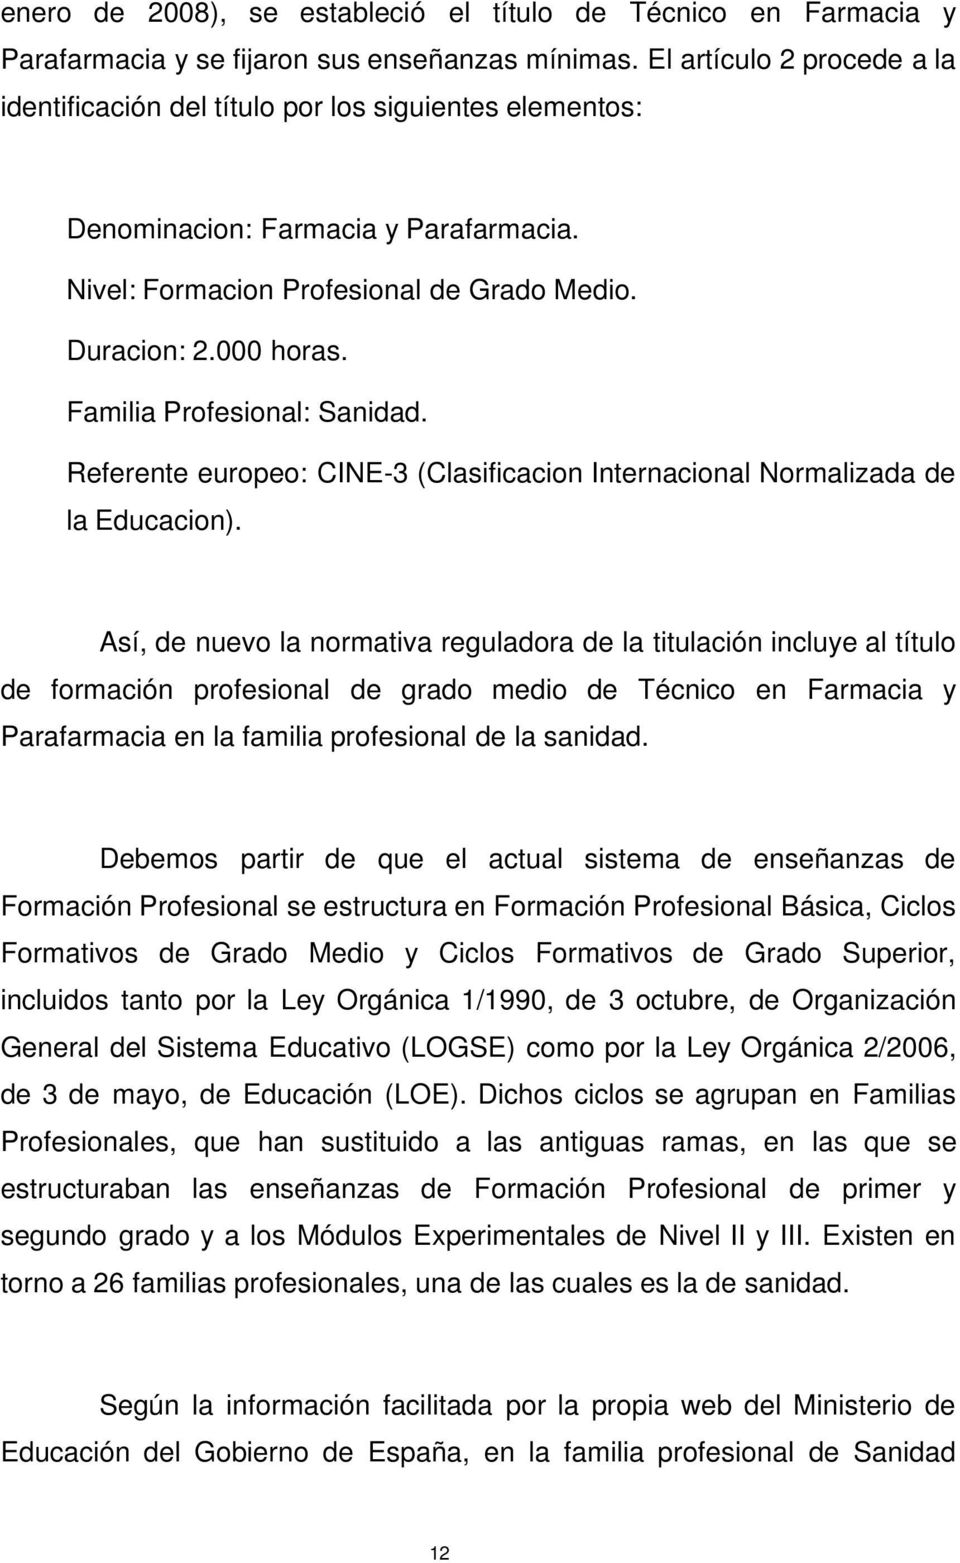 Familia Profesional: Sanidad. Referente europeo: CINE-3 (Clasificacion Internacional Normalizada de la Educacion).